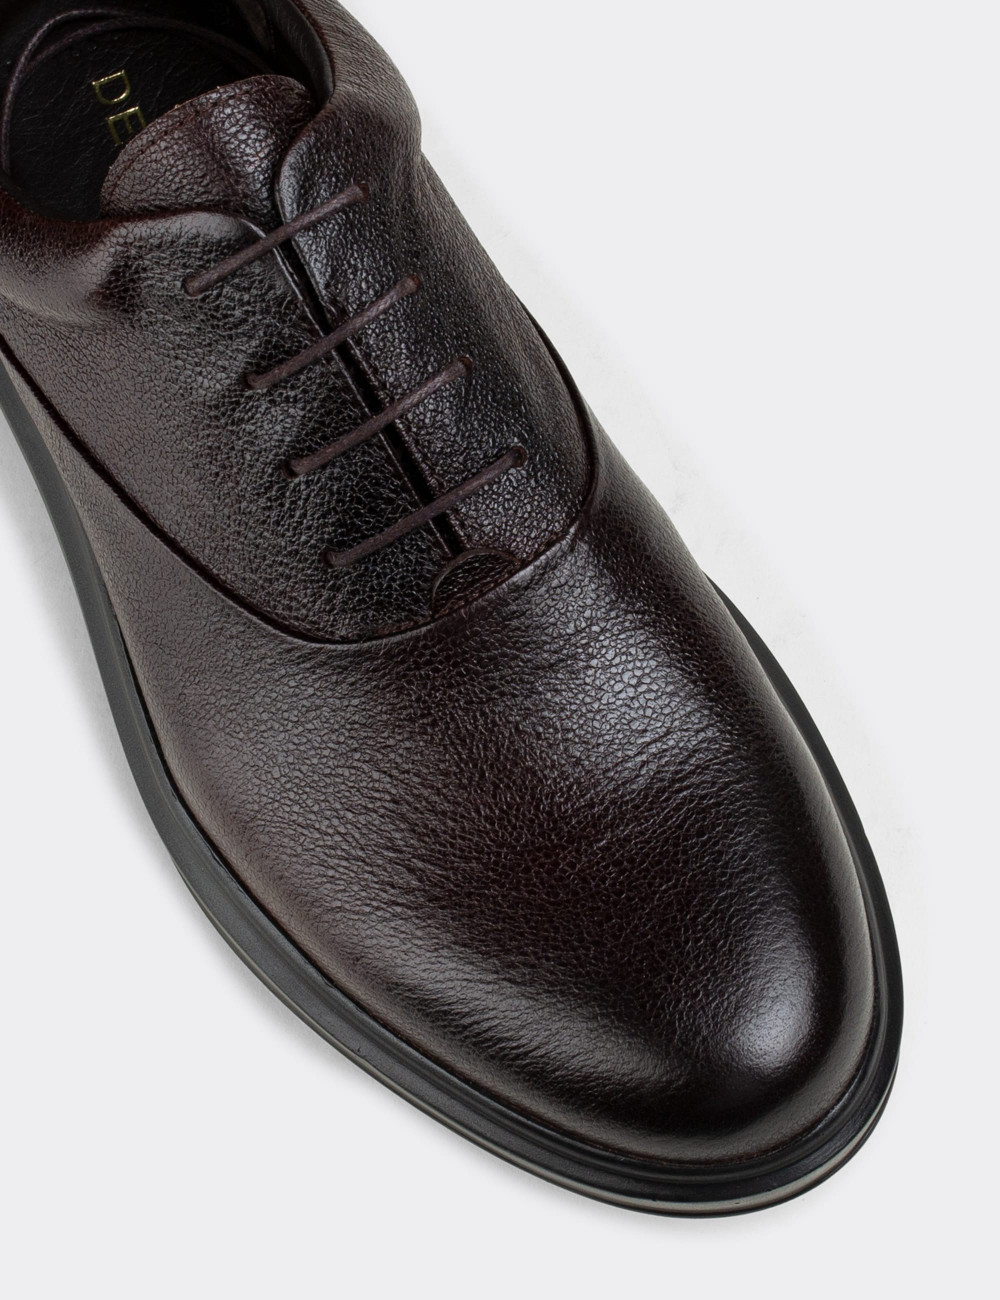 Hakiki Deri Kahverengi Vintage Günlük Erkek Ayakkabı - 01652MKHVP09